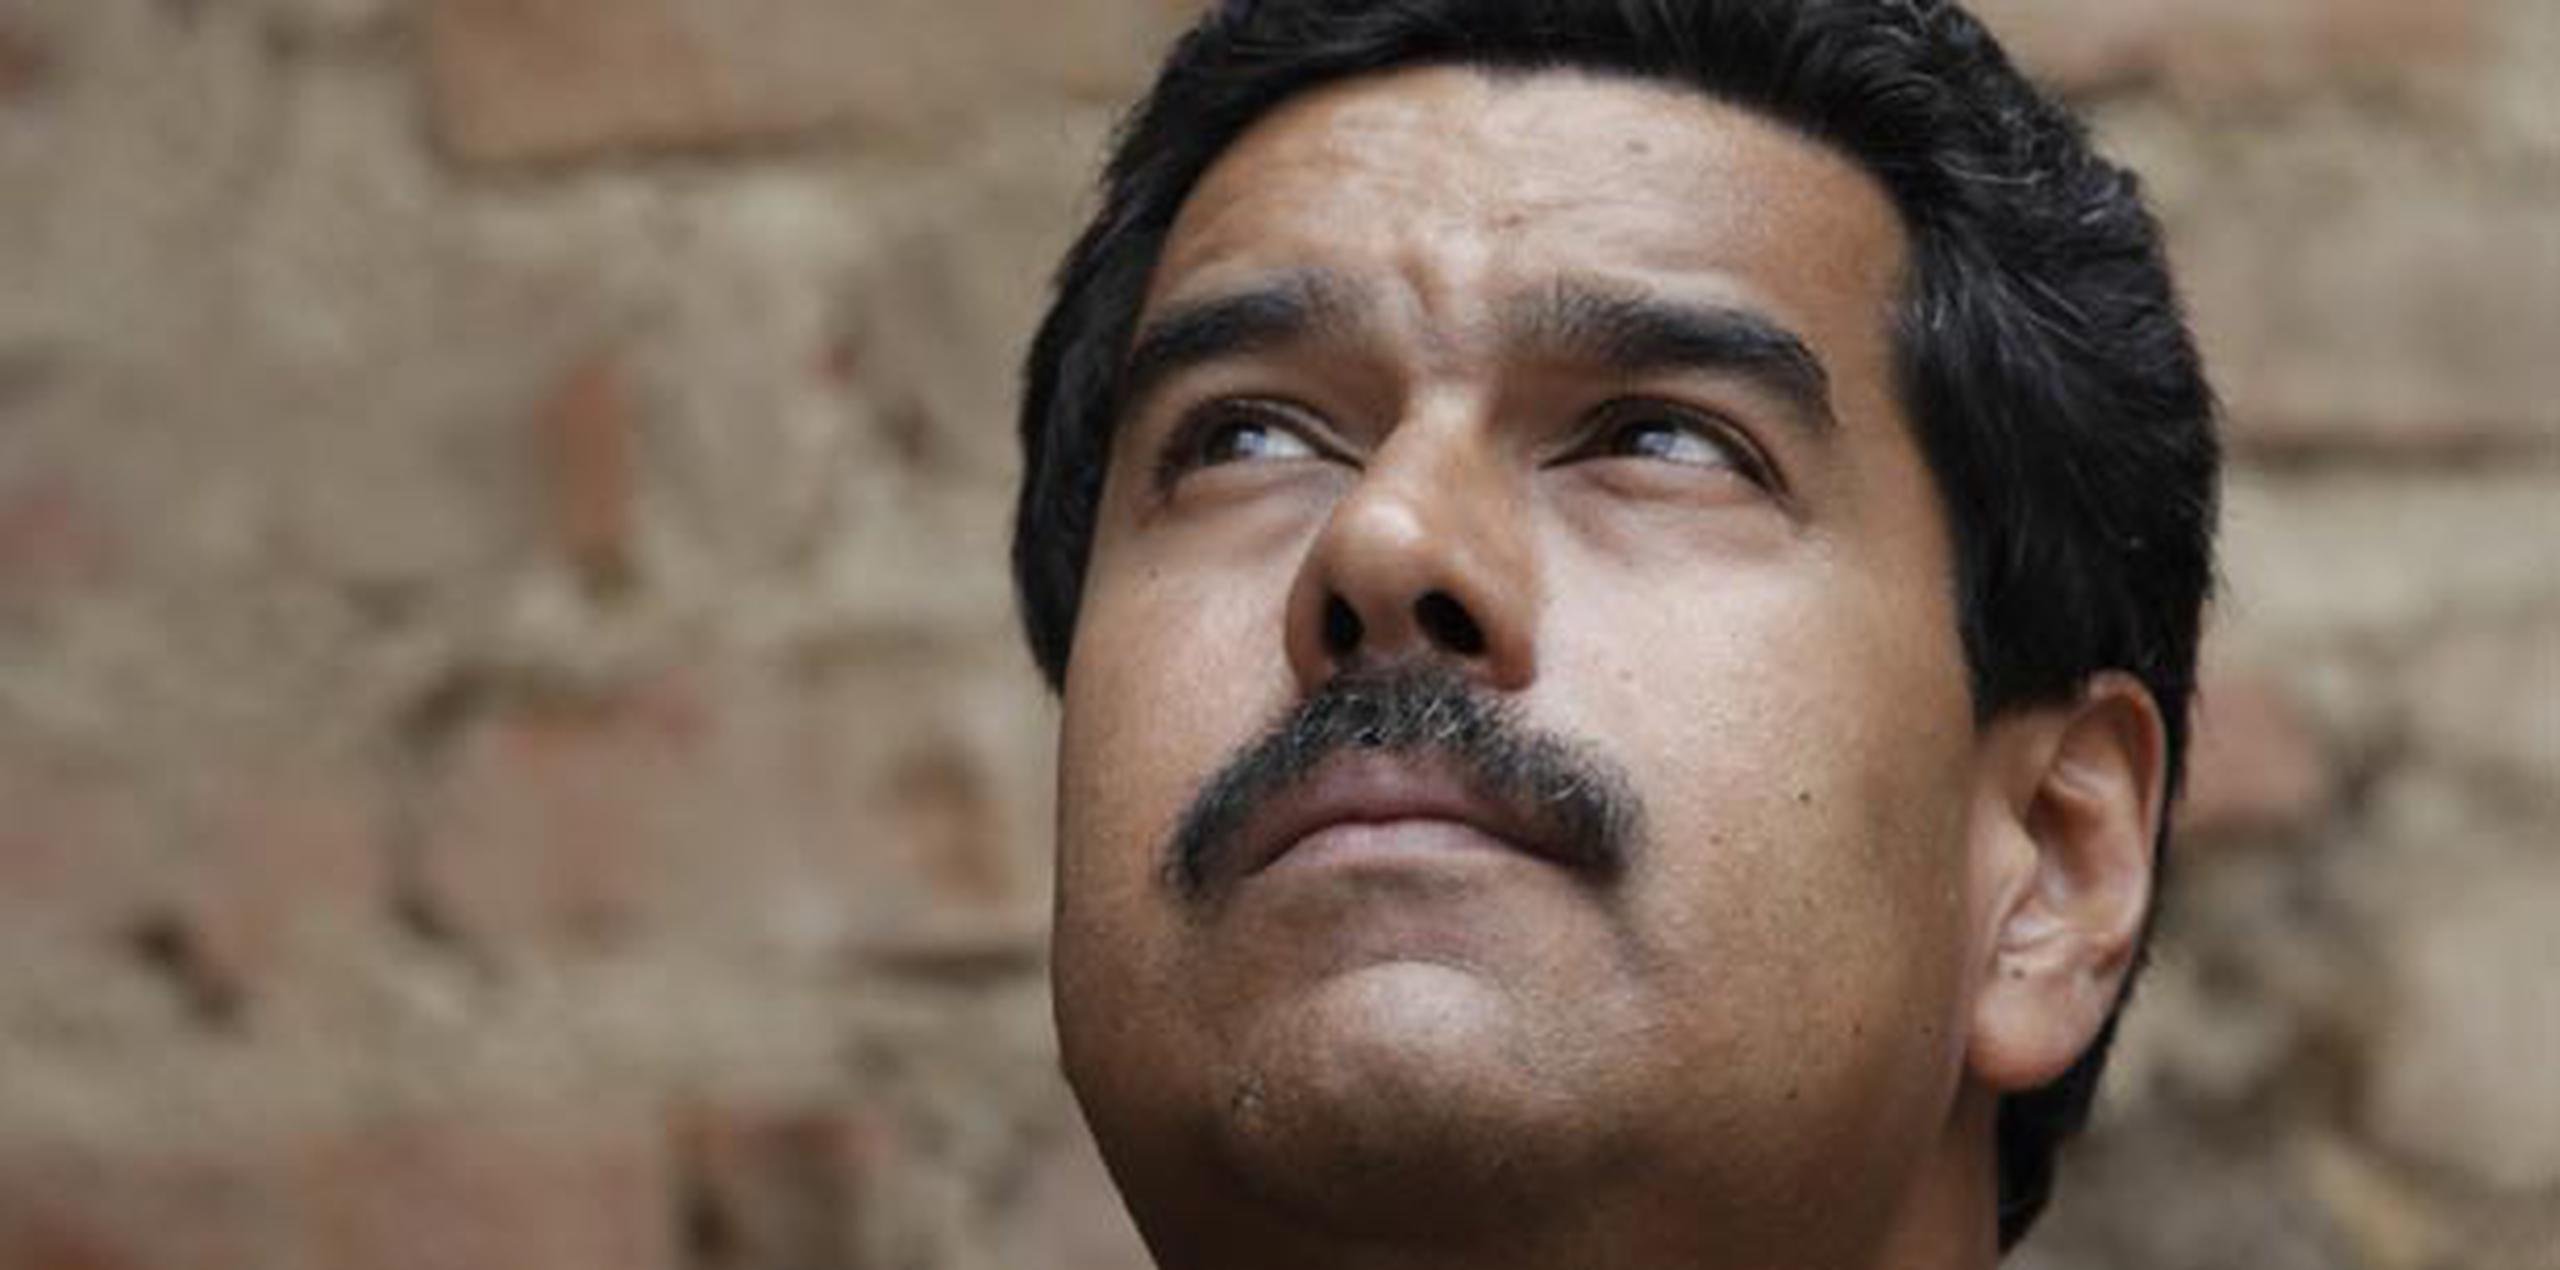 Para Nicolás Maduro, el Gobierno de Barack Obama está "demostrando un nivel de debilidad muy grande desde el punto de vista moral y ético frente al mundo" con su reacción ante el caso Edward Snowden.   (AP/Archivo/Ariana Cubillos)